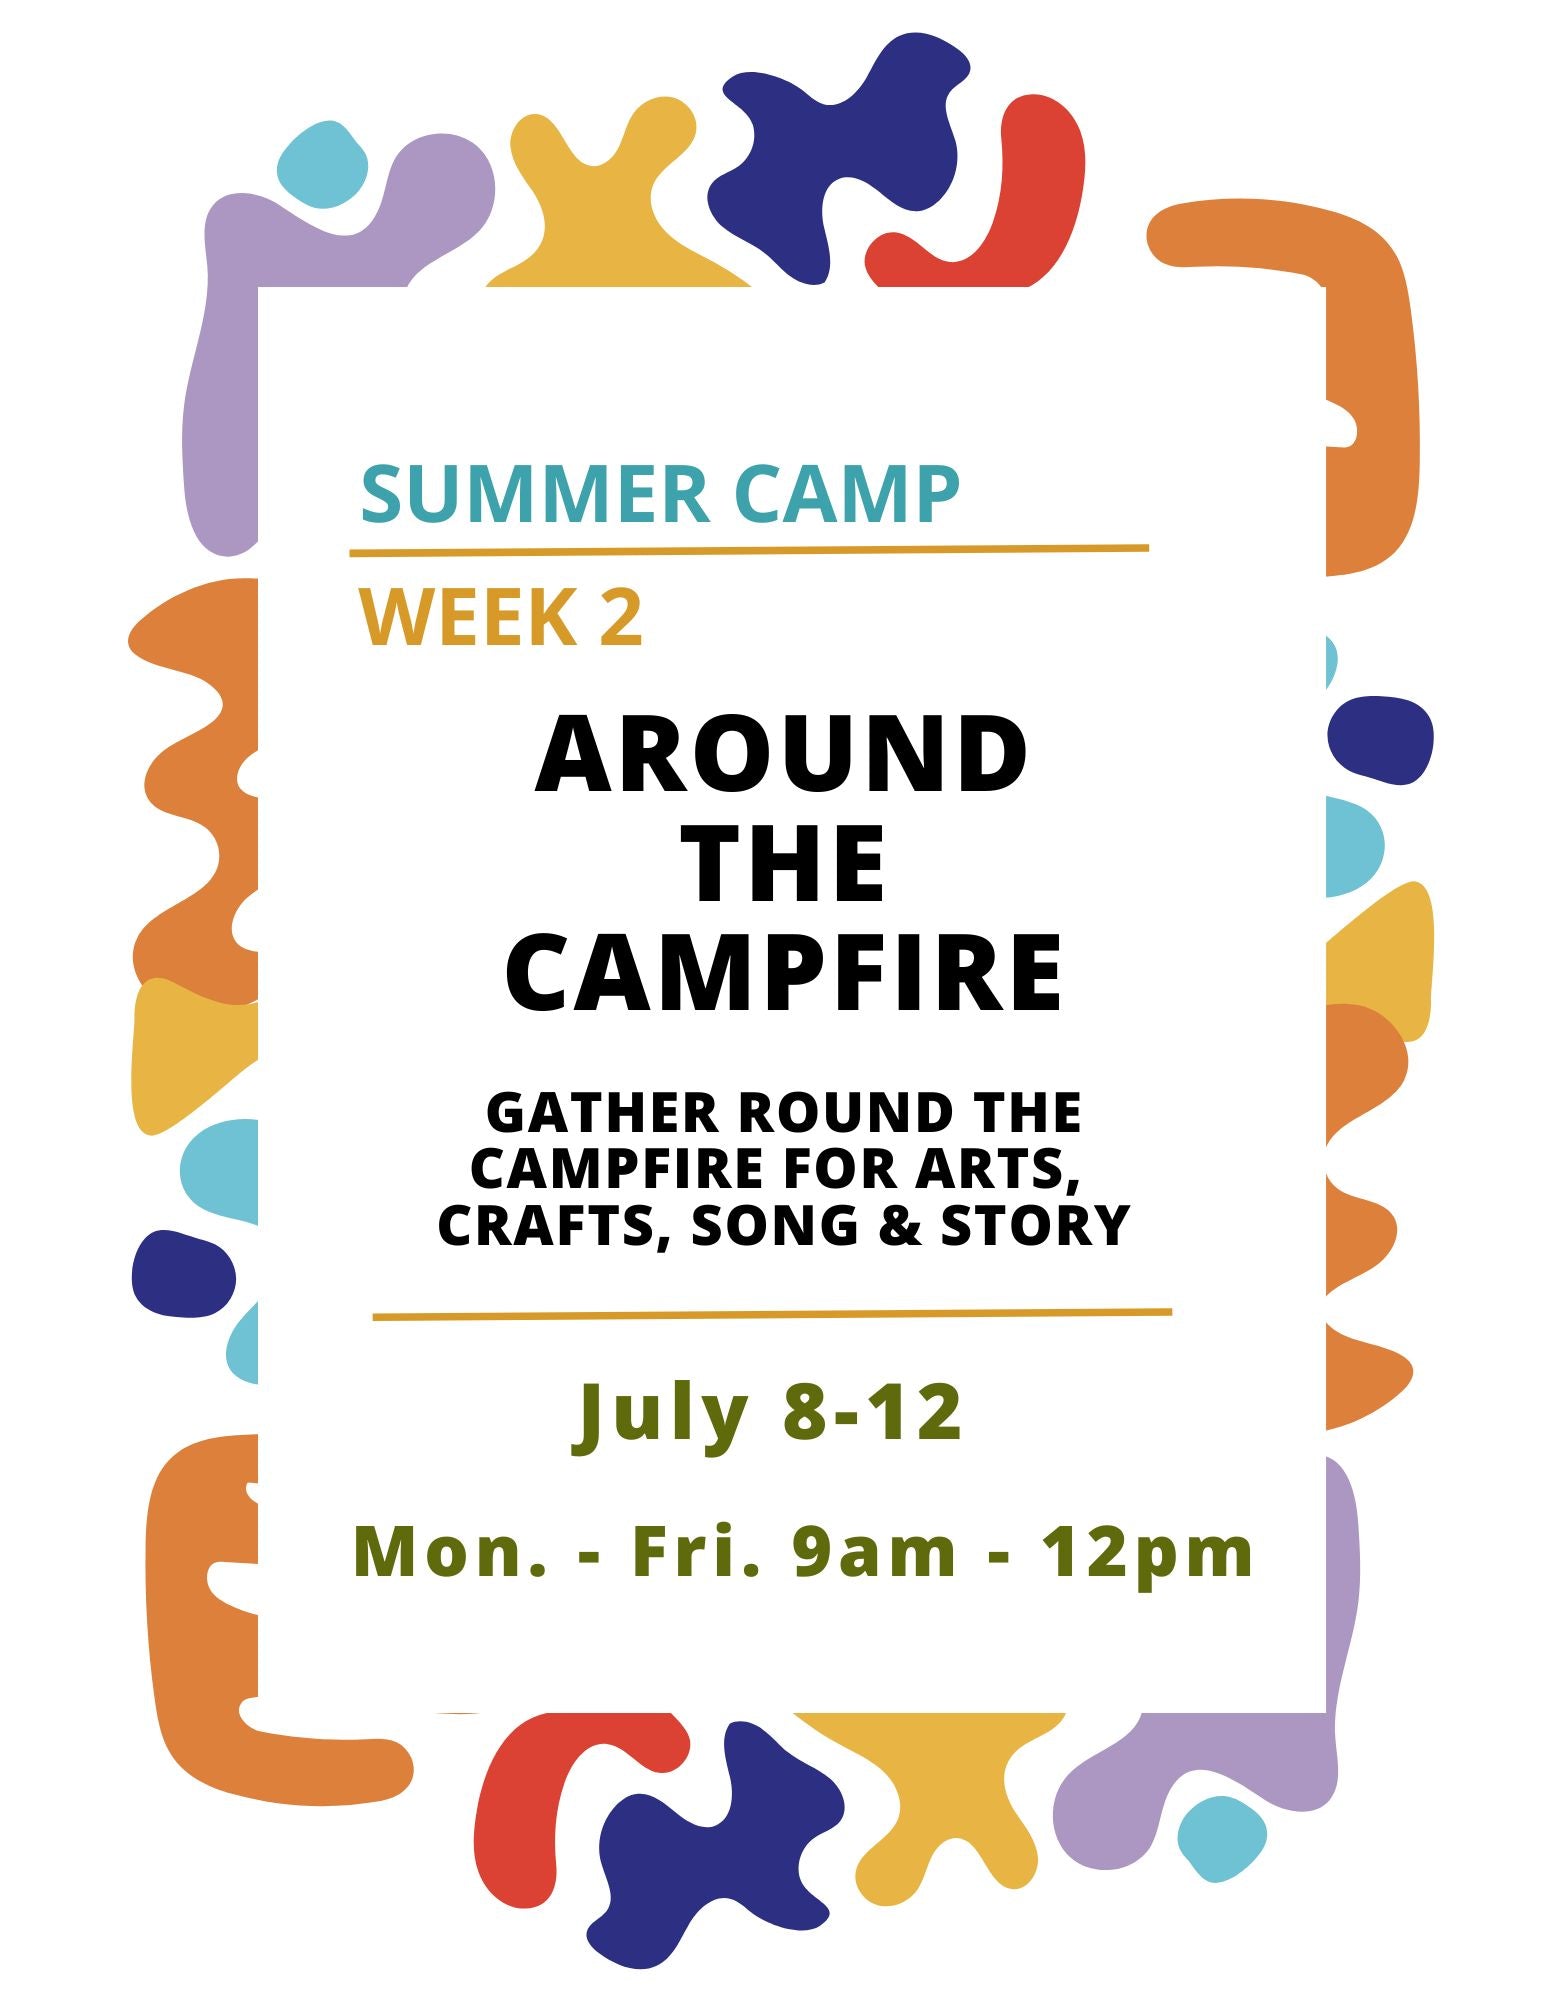 Summer Camp Week 2: Around the Campfire